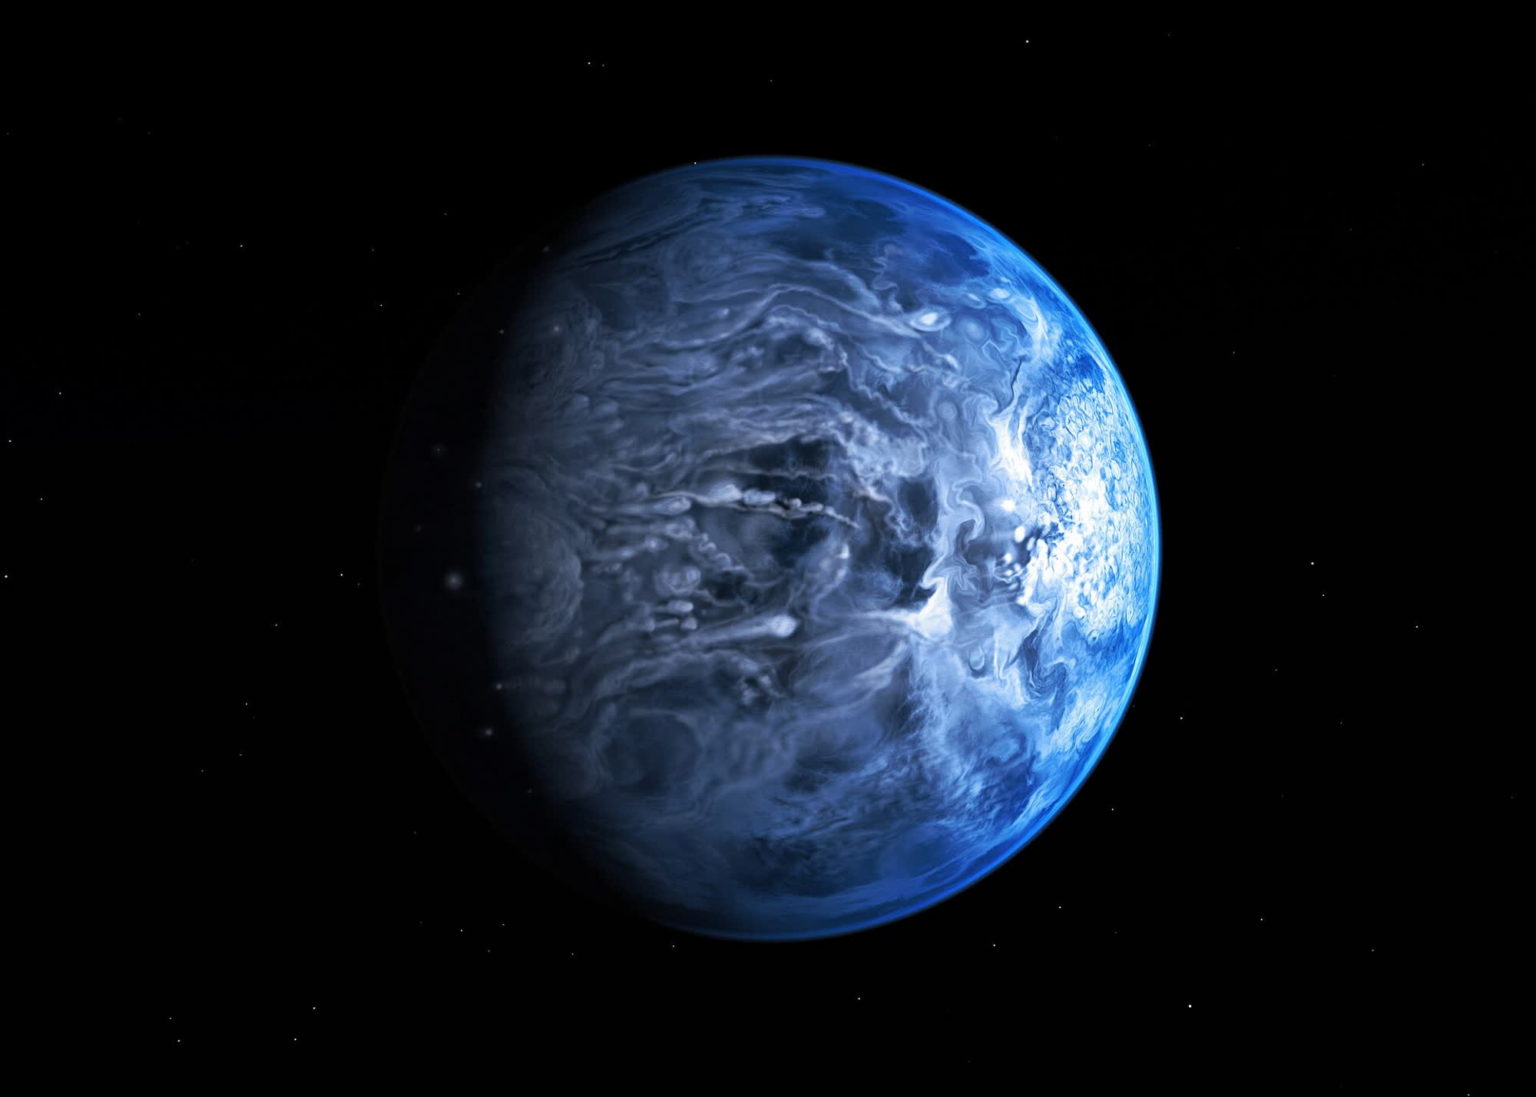 Jupiter-like exoplanet endures molten glass showers and rotten egg odor